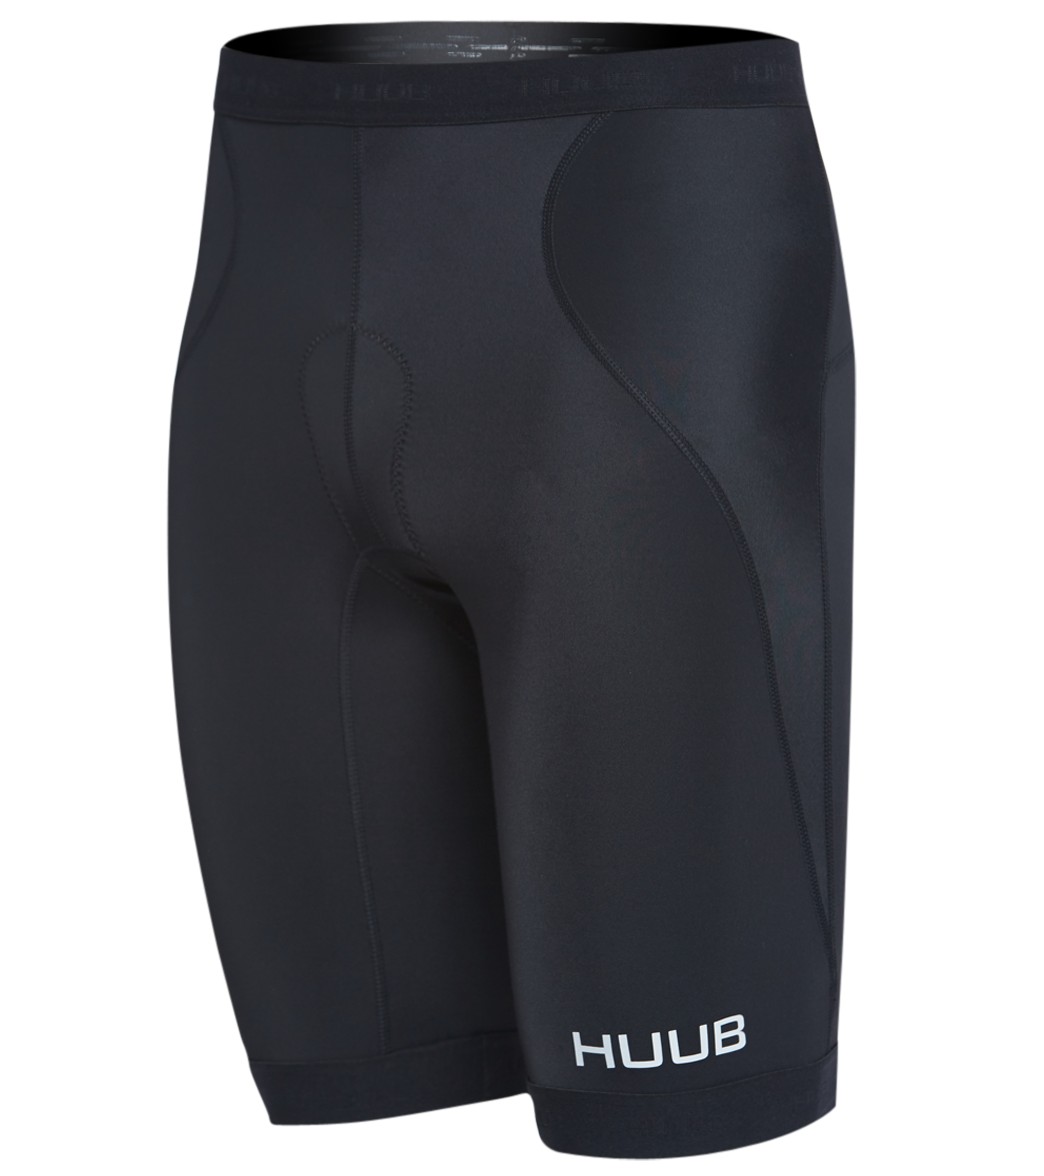 Huub Men's Essentials Tri Shorts - Black/Red Xl - Swimoutlet.com